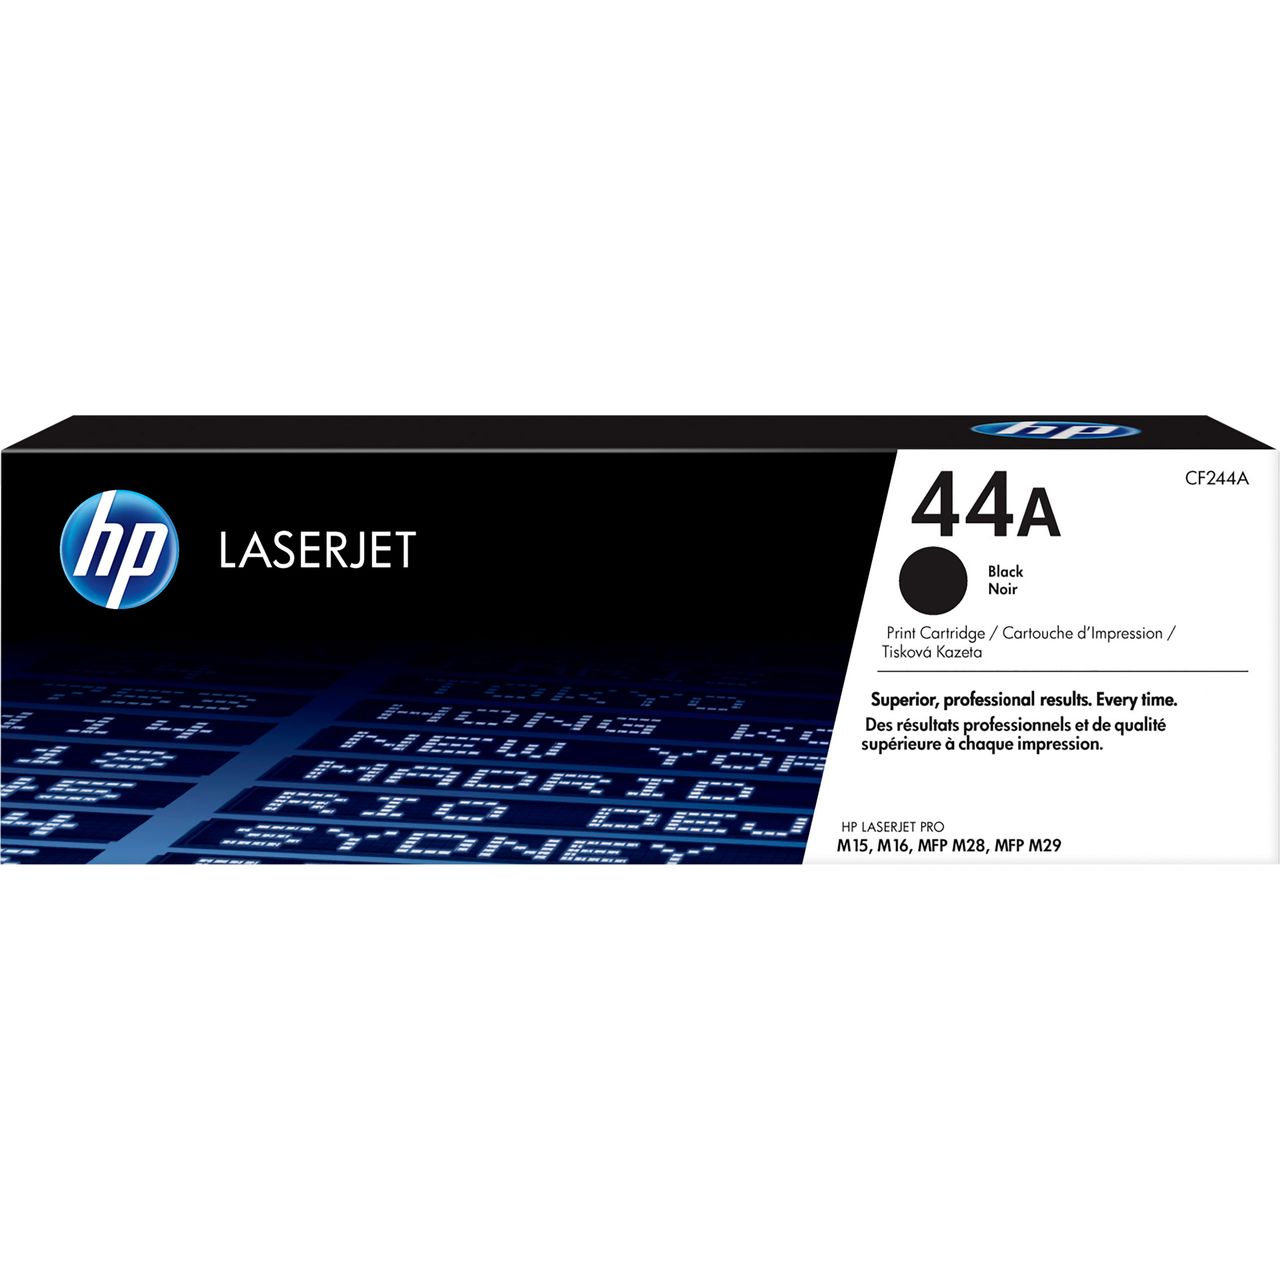 HP 44A Black Original LaserJet Toner Cartridge Review